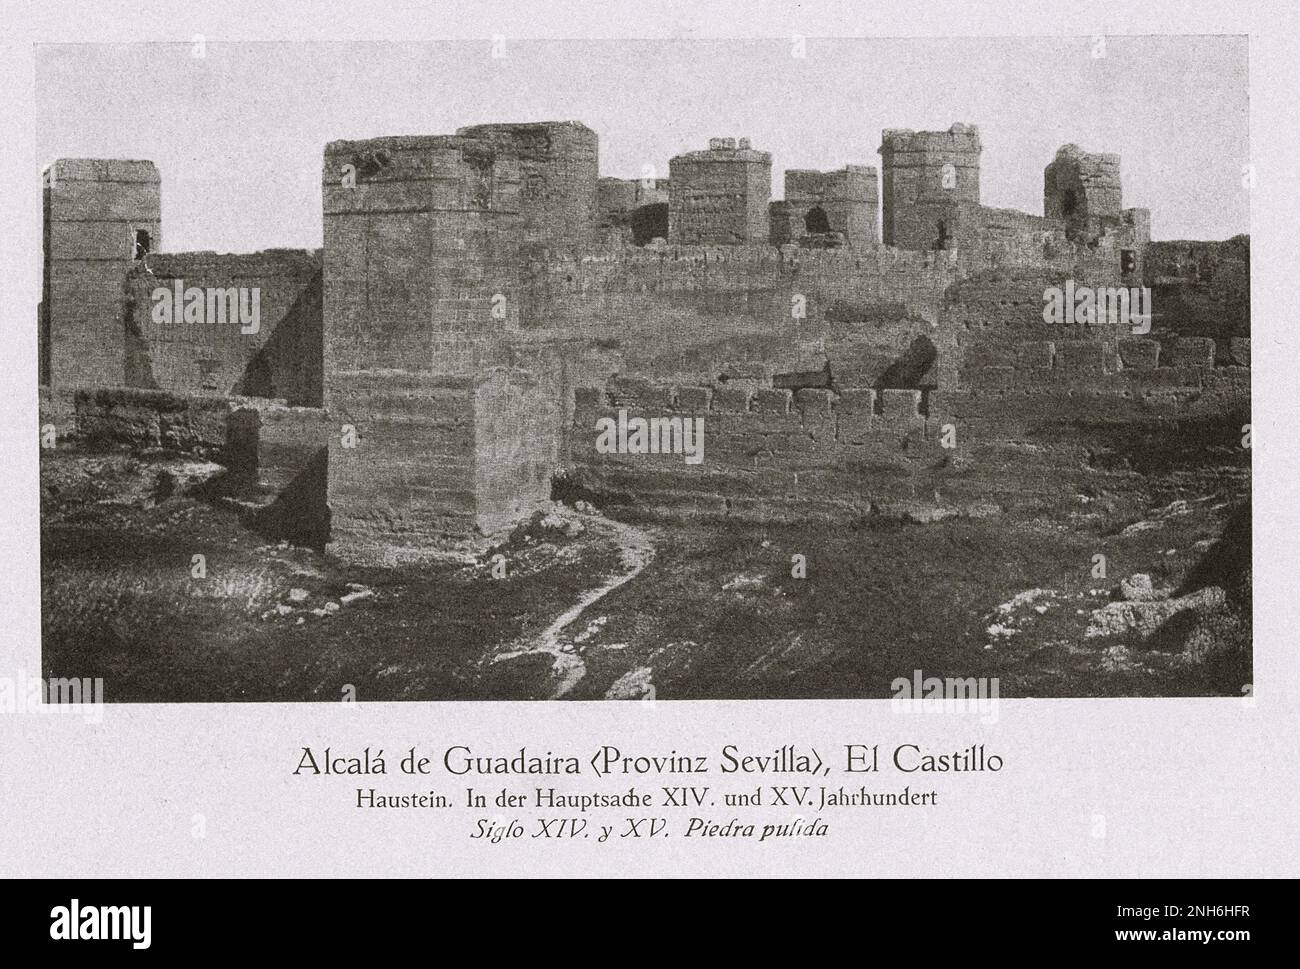 Architecture de la vieille Espagne. Alcalá de Guadaíra (province de Séville), El Castillo (château). La pierre de l'étain. XIVe et XVe siècles Alcalá de Guadaíra est une ville située à environ 17 km au sud-est de Séville Banque D'Images